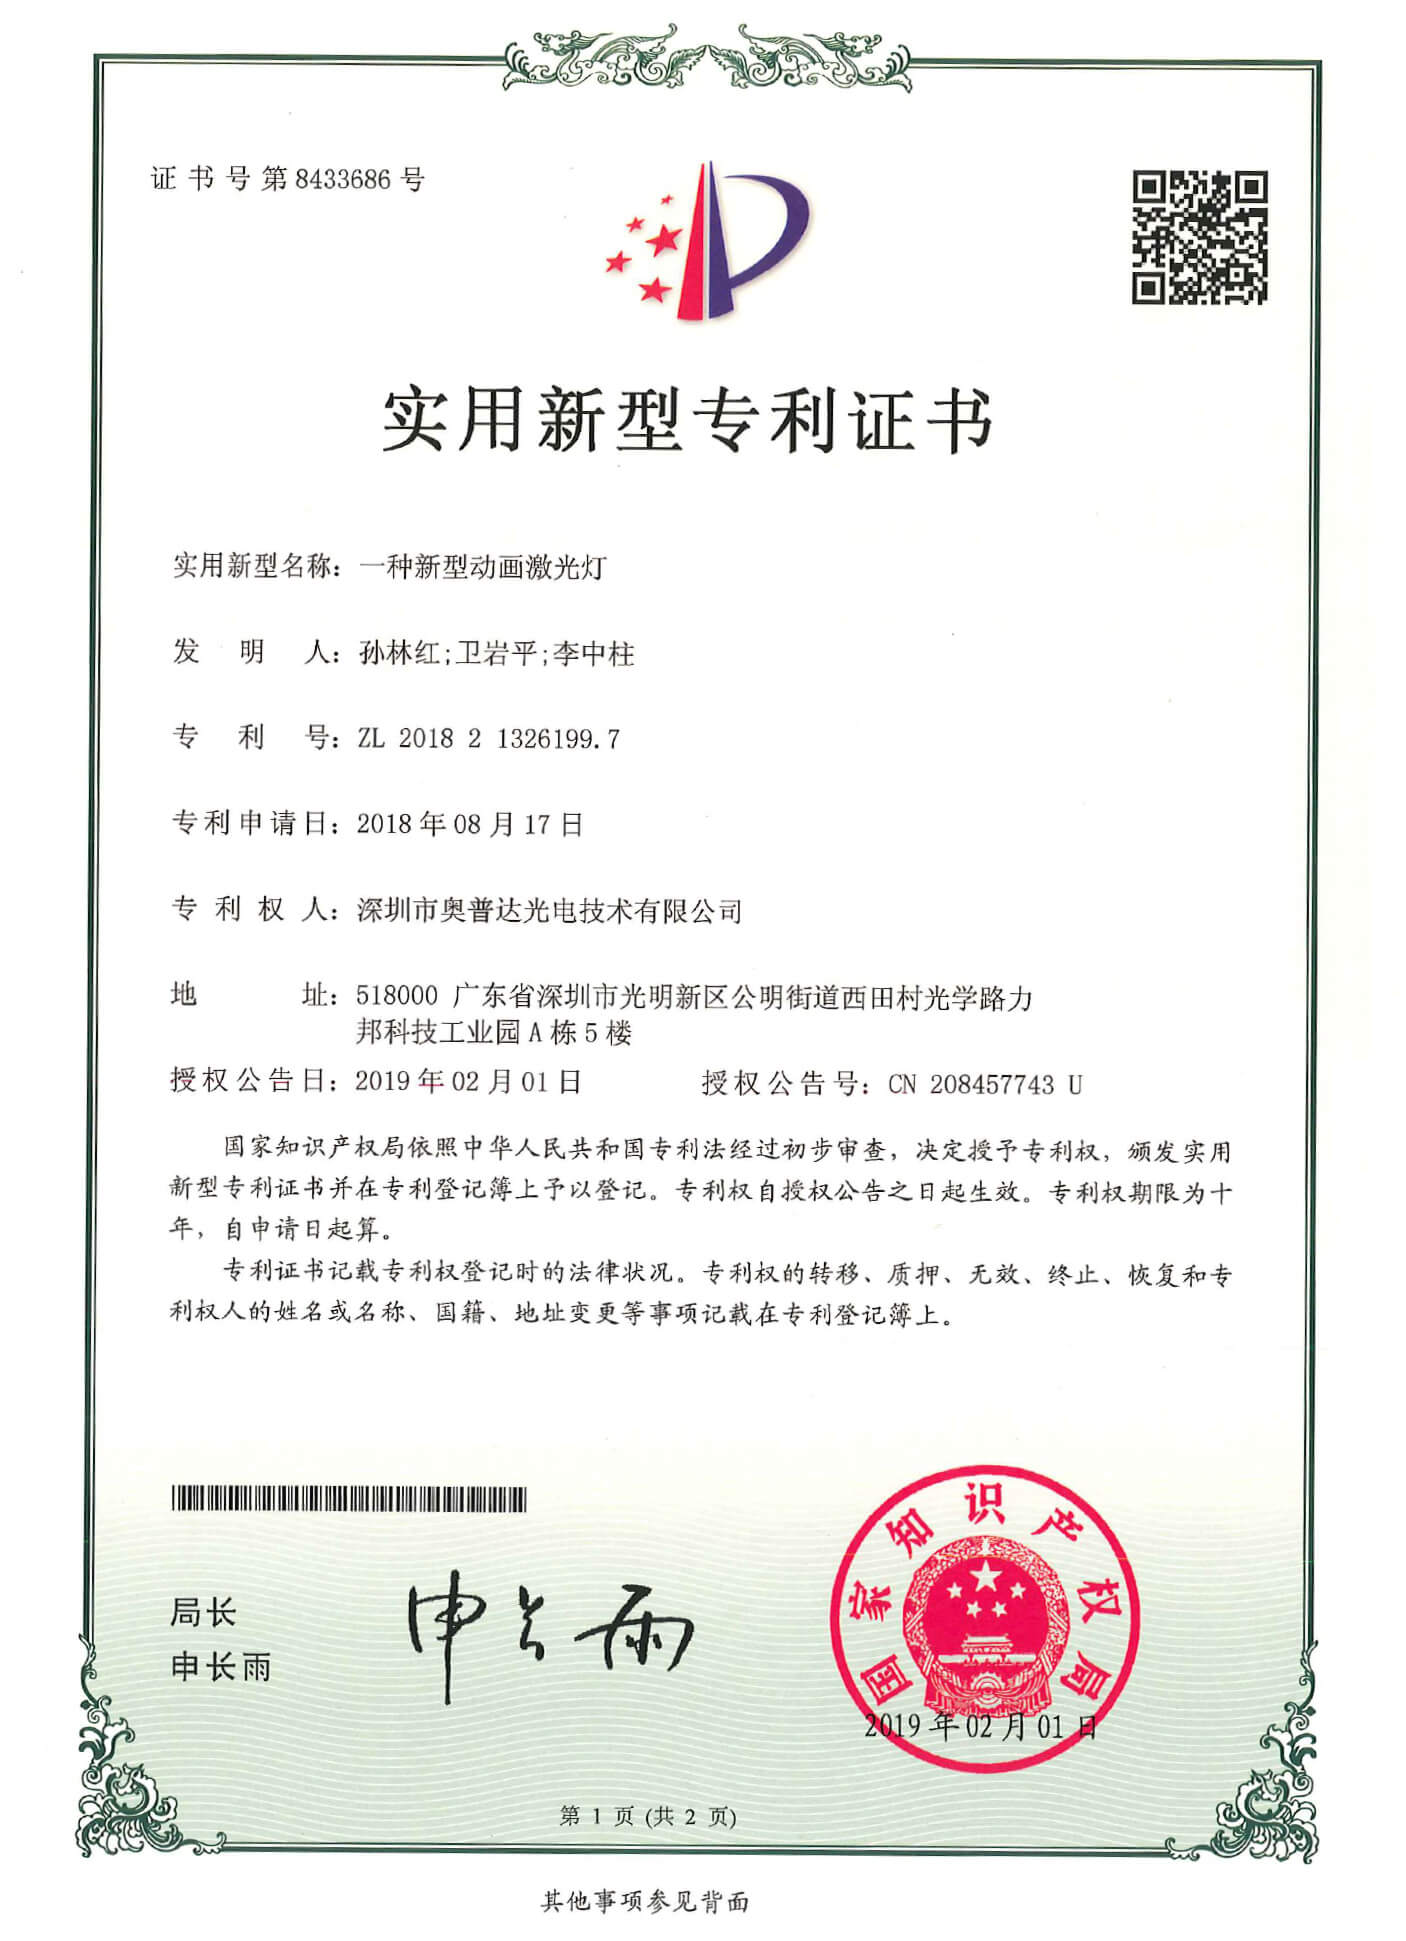 深圳市奥普达光电技术有限公司-2018213261997-专利证书